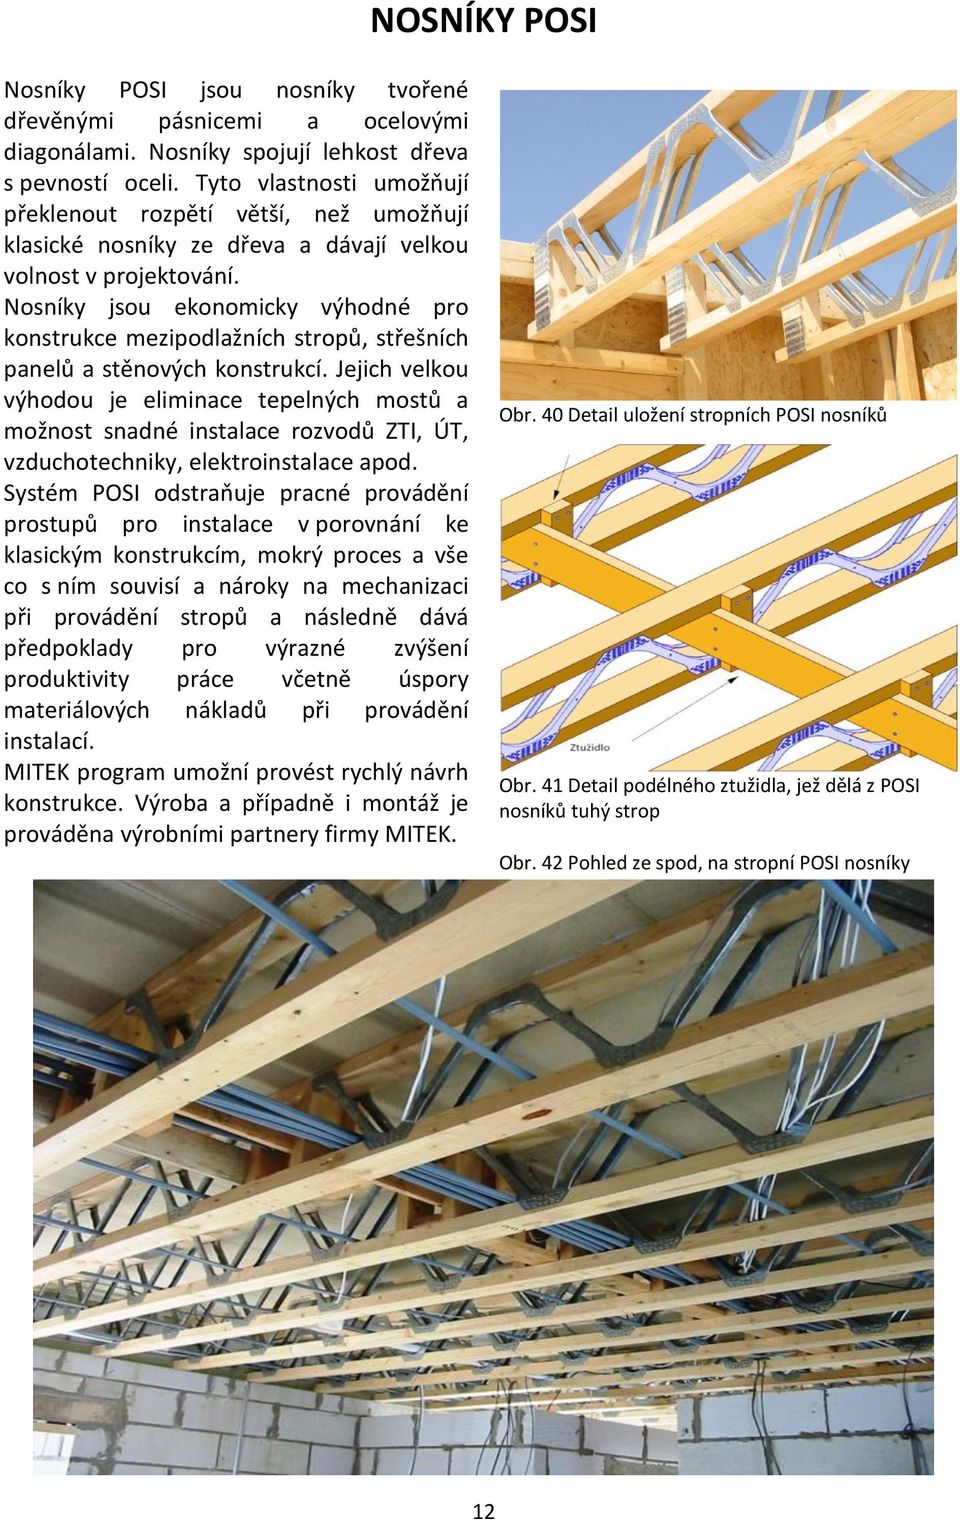 Nosníky jsou ekonomicky výhodné pro konstrukce mezipodlažních stropů, střešních panelů a stěnových konstrukcí.